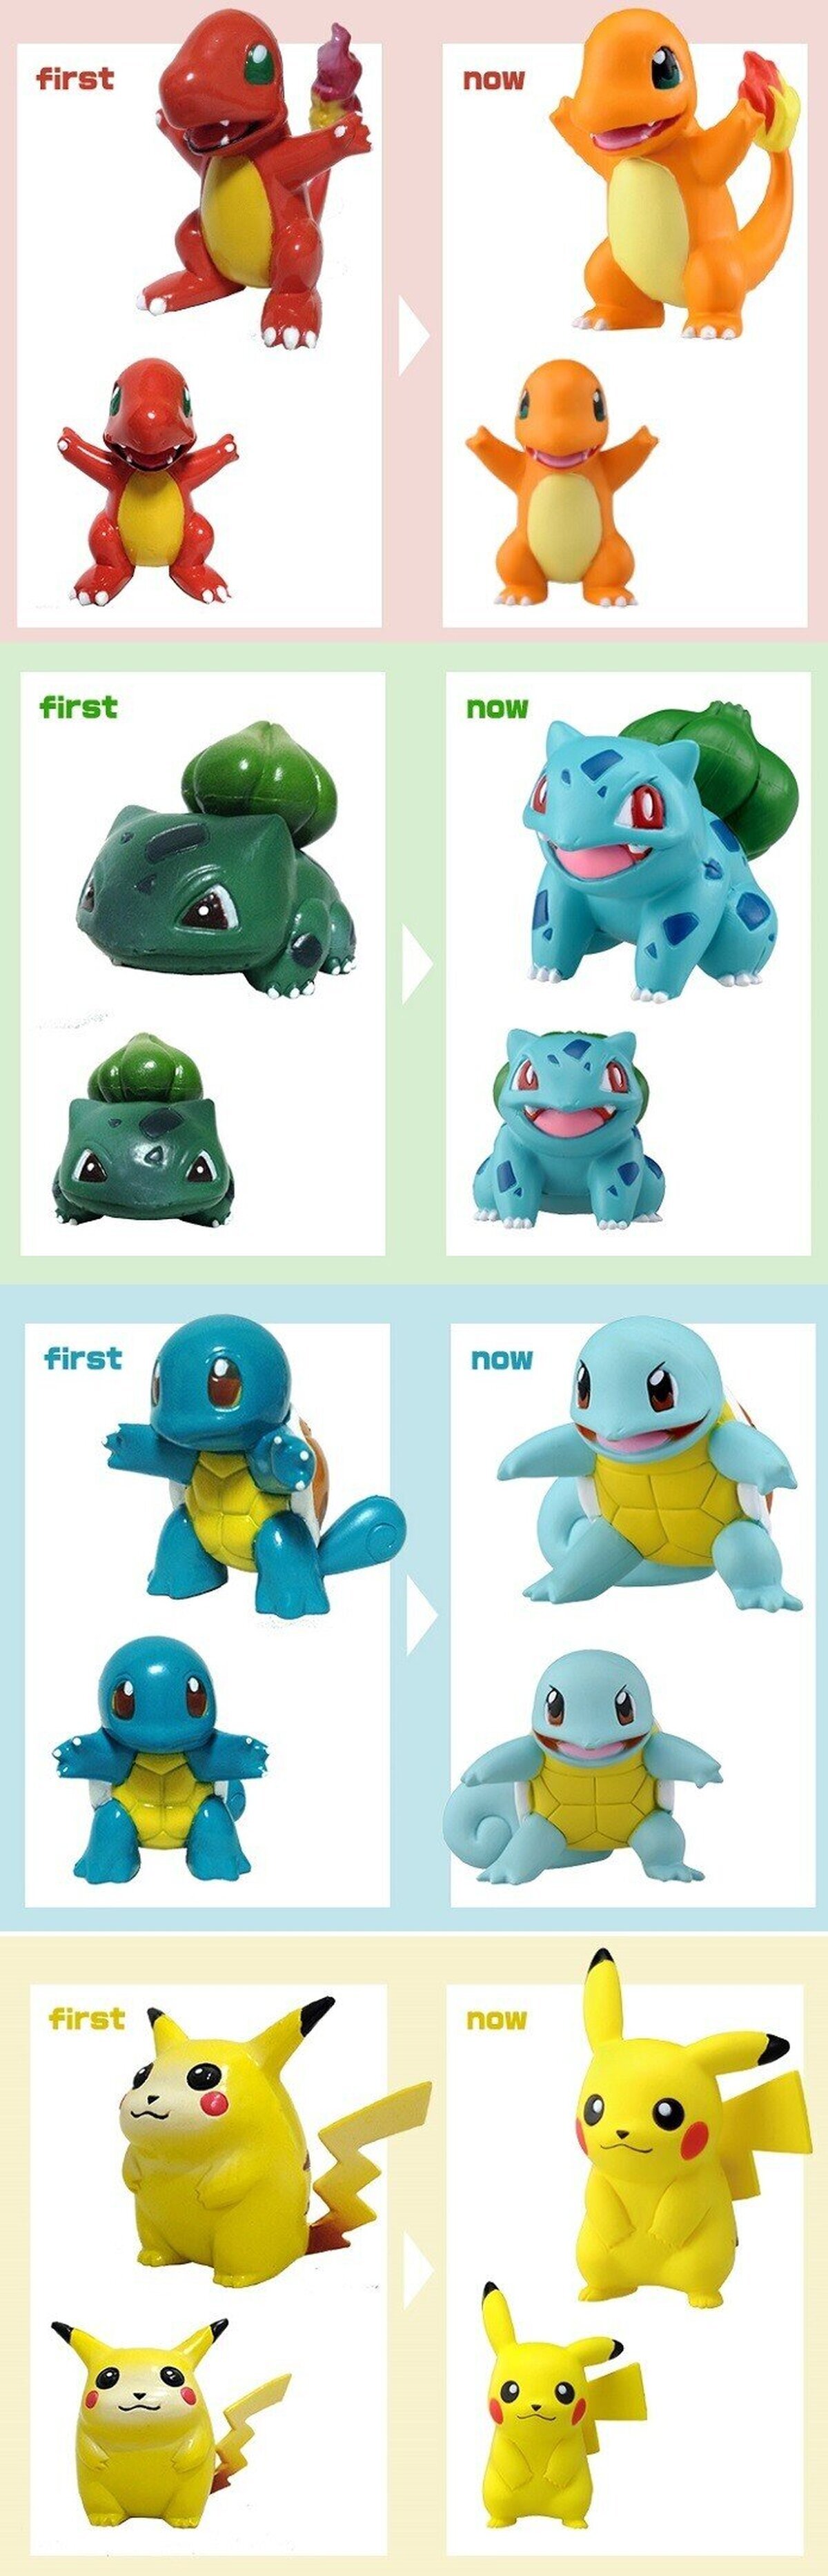 La evolución de los juguetes de Pokémon